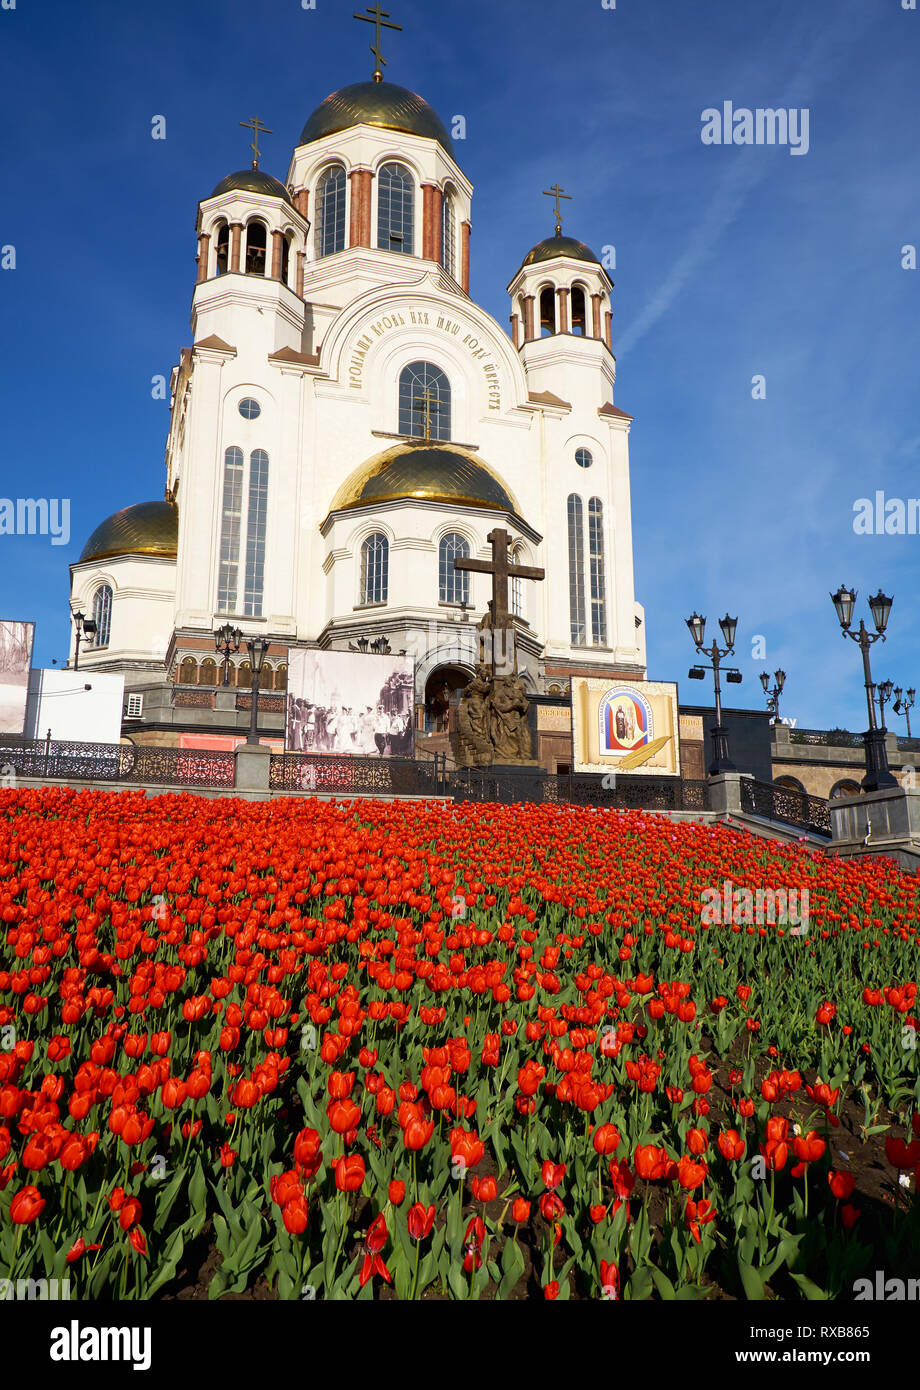 Jekaterinburg, Russland - 26. MAI 2015: Blick auf die Kirche auf Blut zu Ehren aller Heiligen erstrahlt in der Russischen Land im Frühling mit blühenden Tul Stockfoto